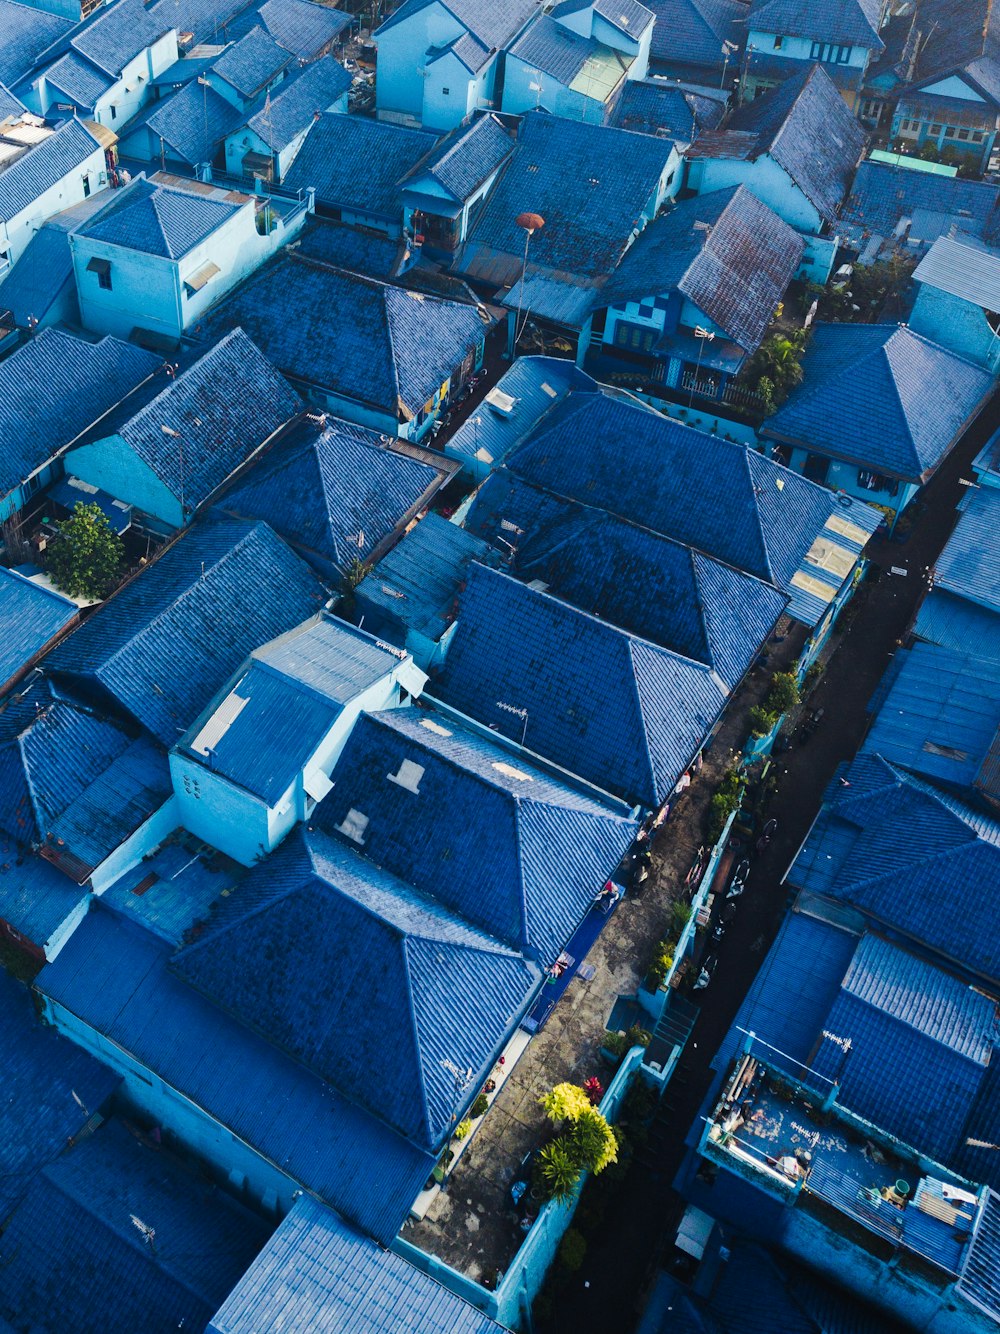 Fotografia aerea di case con tetti blu durante il giorno